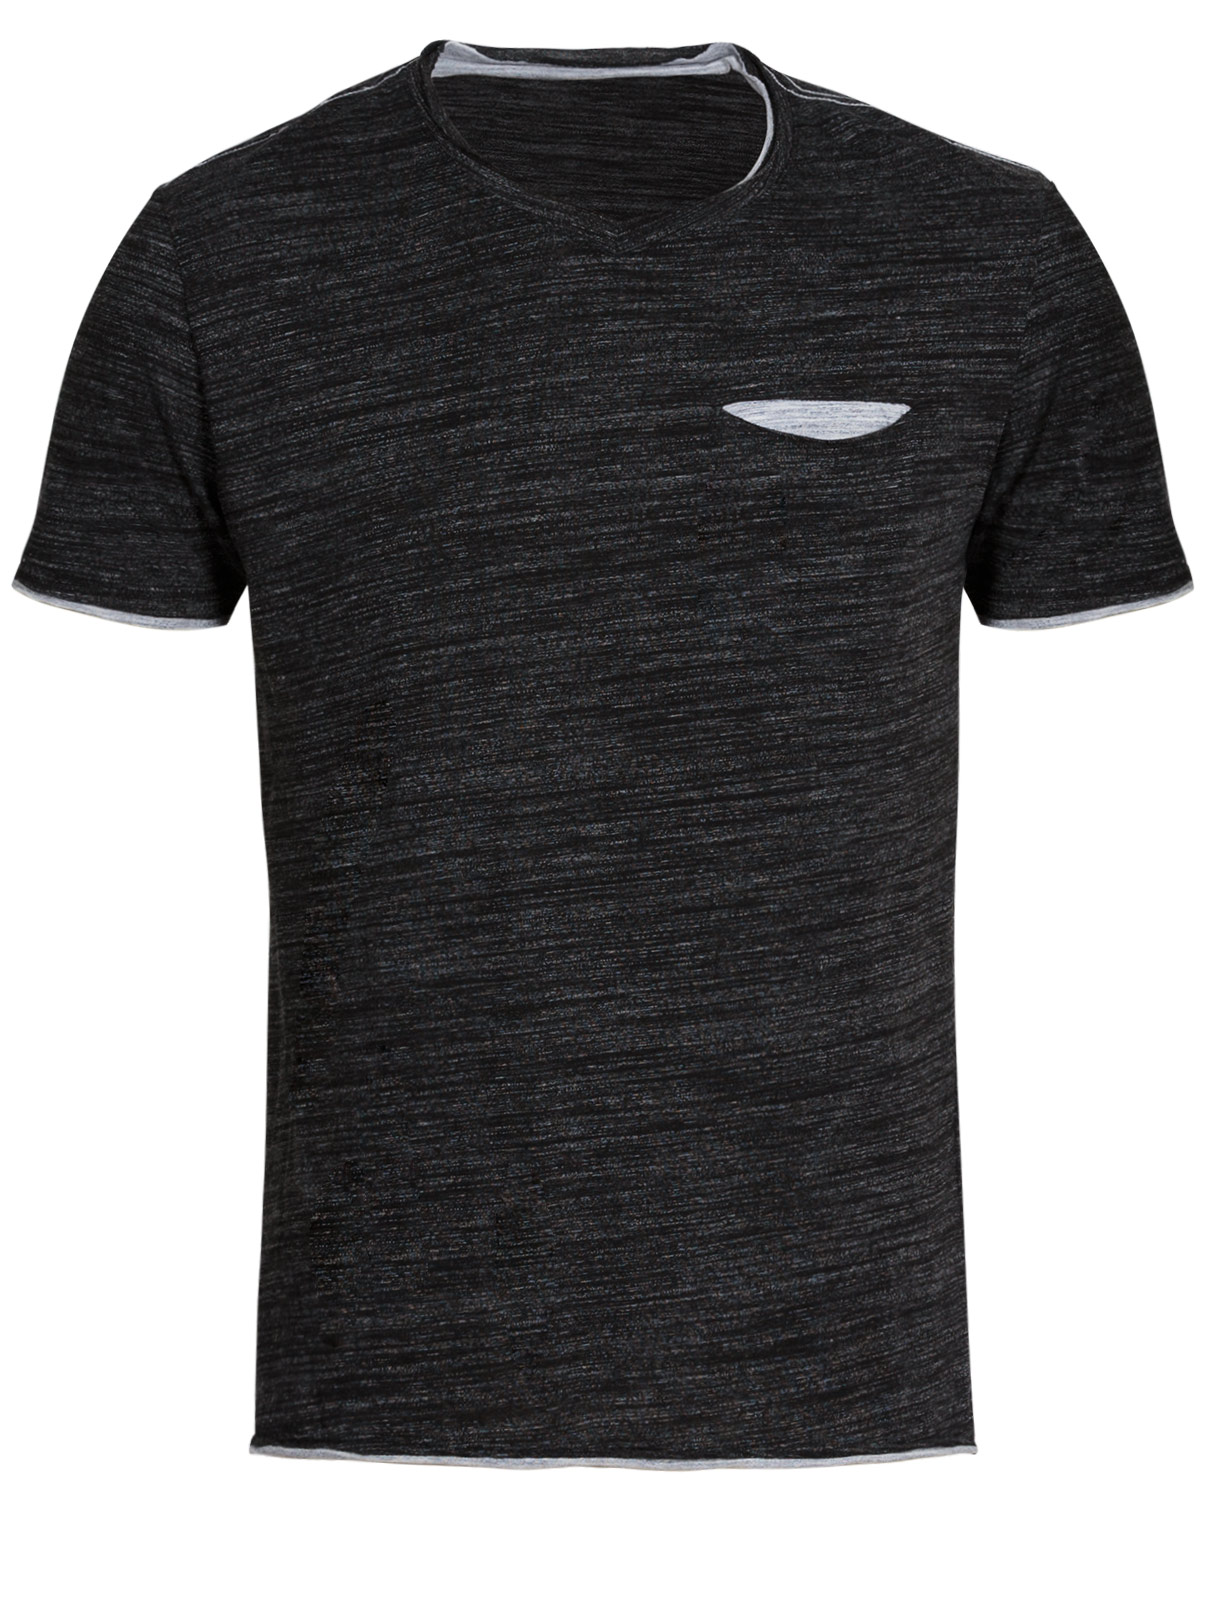 T-Shirt με Τσέπη και Αντιθέσεις - Ανθρακί